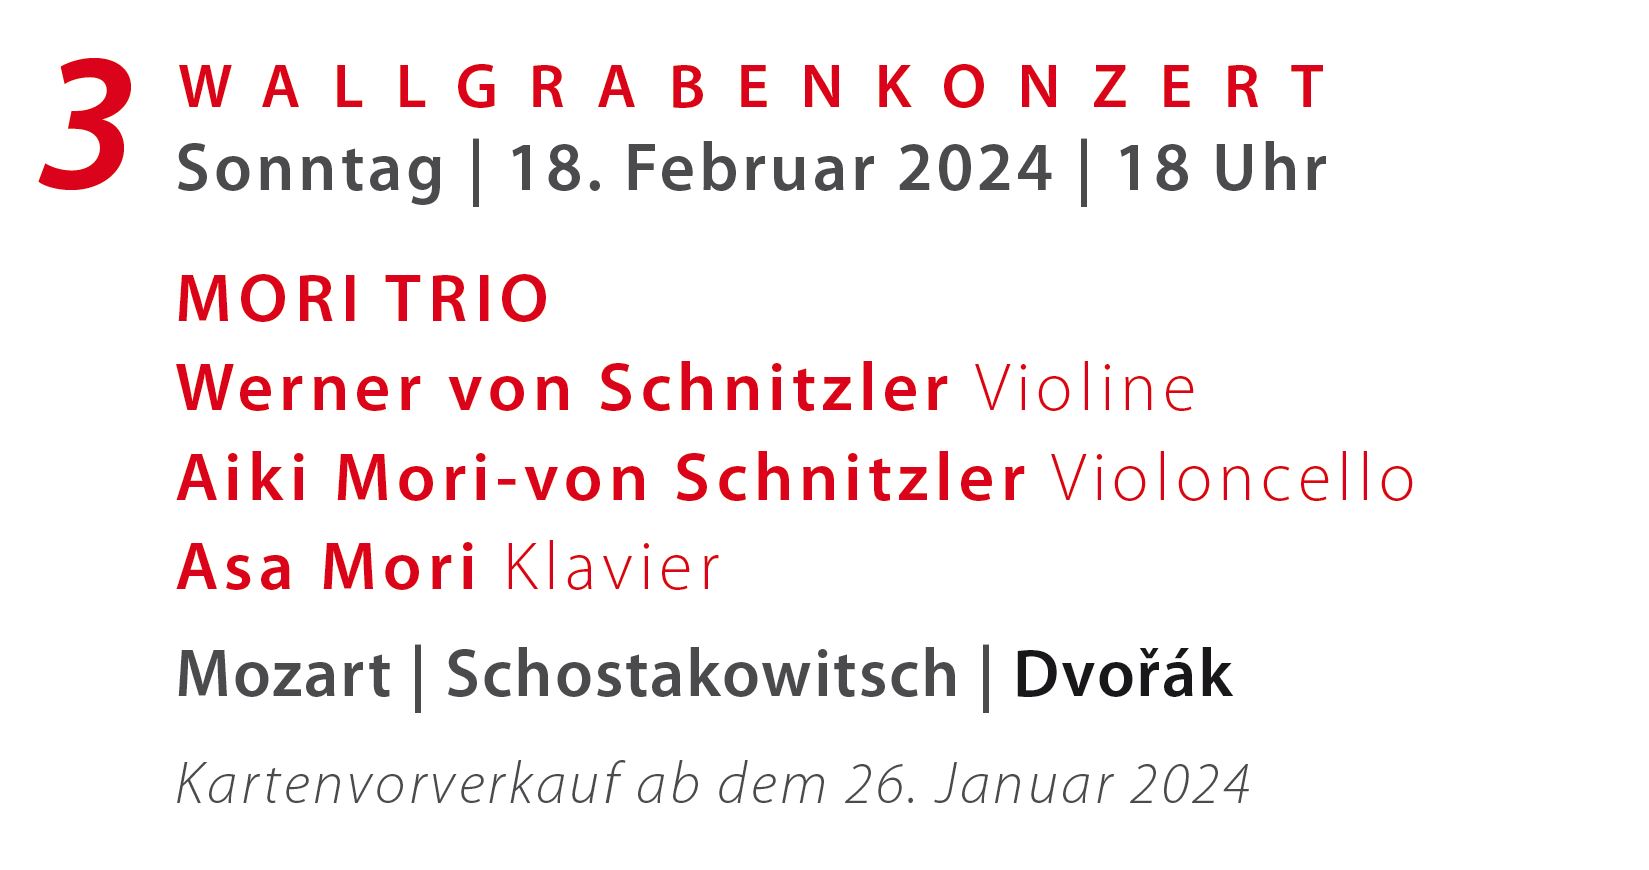 3. Wallgrabenkonzert (So. 19. März 2023, 18 Uhr)
		 .__. Werner von Schnitzler, Violine; Ana Mirabella Dina, Klavier   .__.  
		 .__. Werke von Mozart, Brahms, Stravinsky .__. 